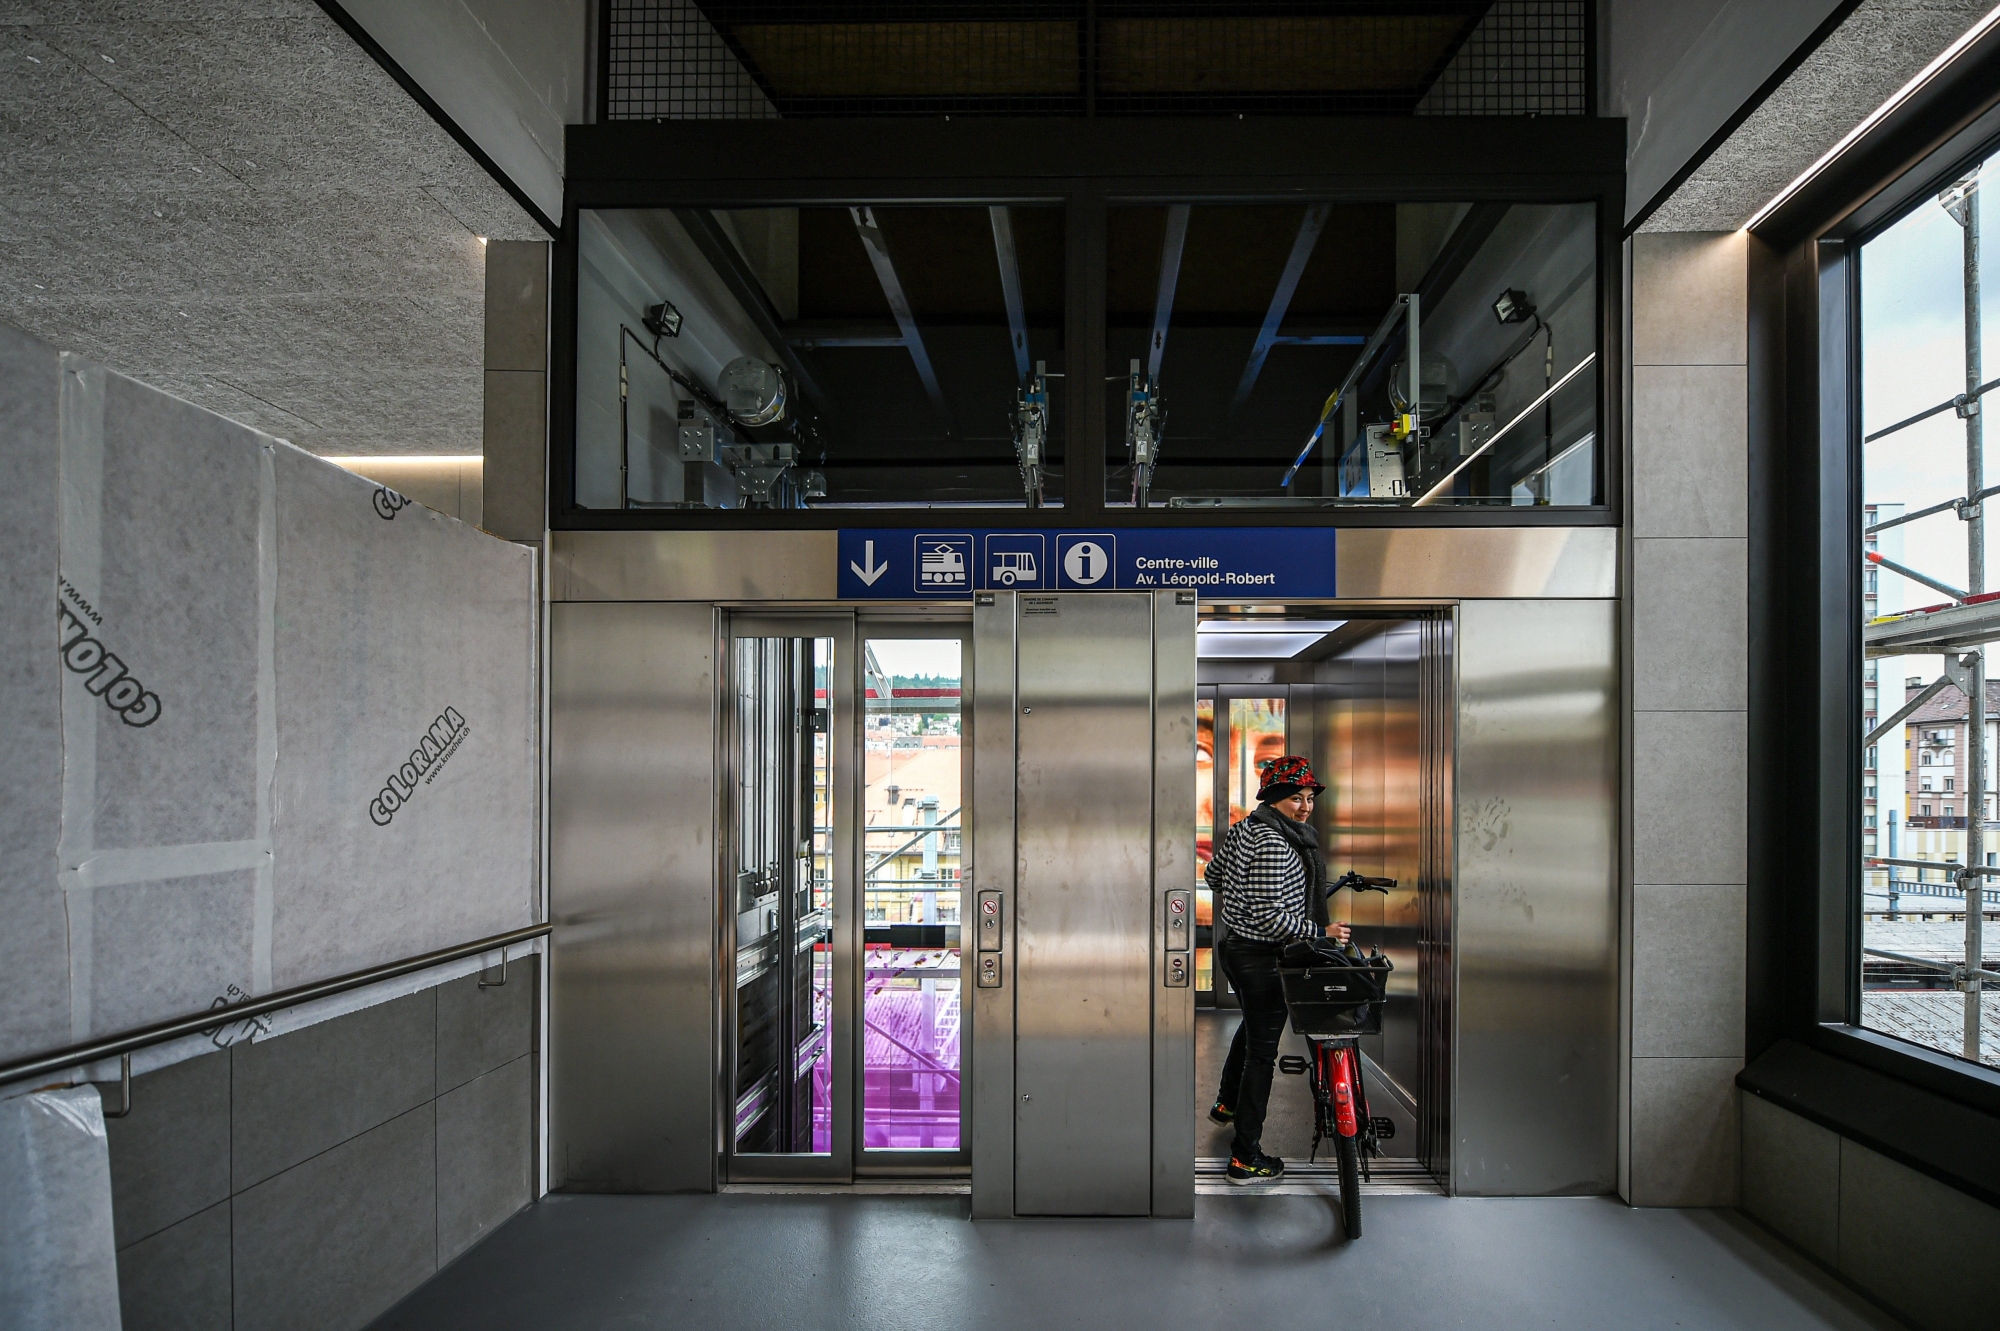 Après un léger couac, les ascenseurs de la gare sont à nouveau opérationnels depuis ce vendredi à 13h30.